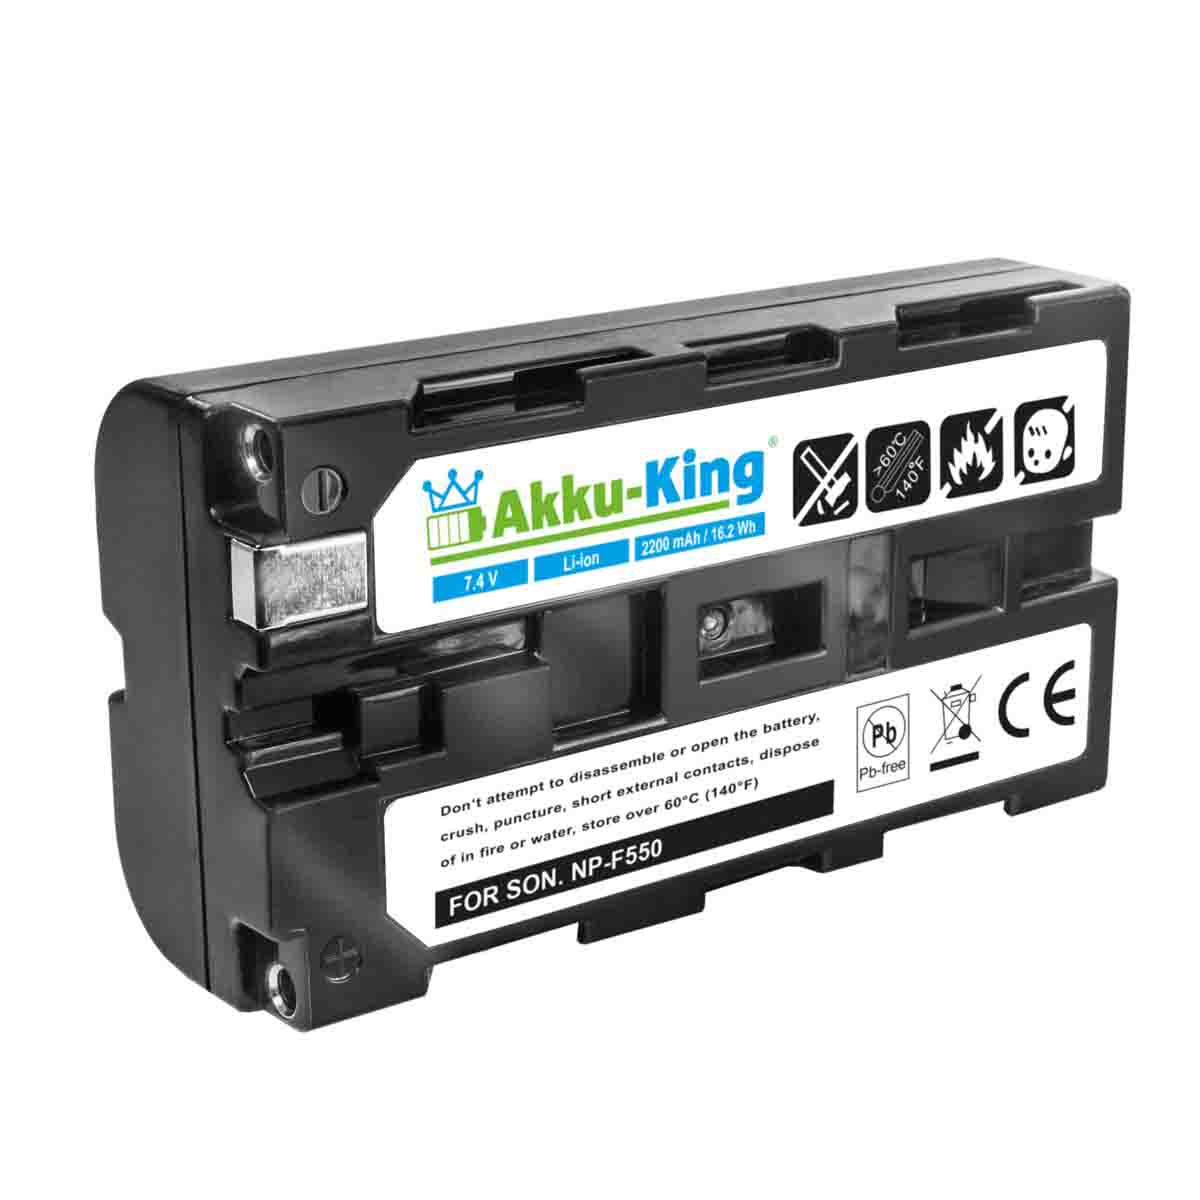 Volt, LT2F2200 AKKU-KING Futaba kompatibel Akku 2200mAh Geräte-Akku, Li-Ion 7.4 mit